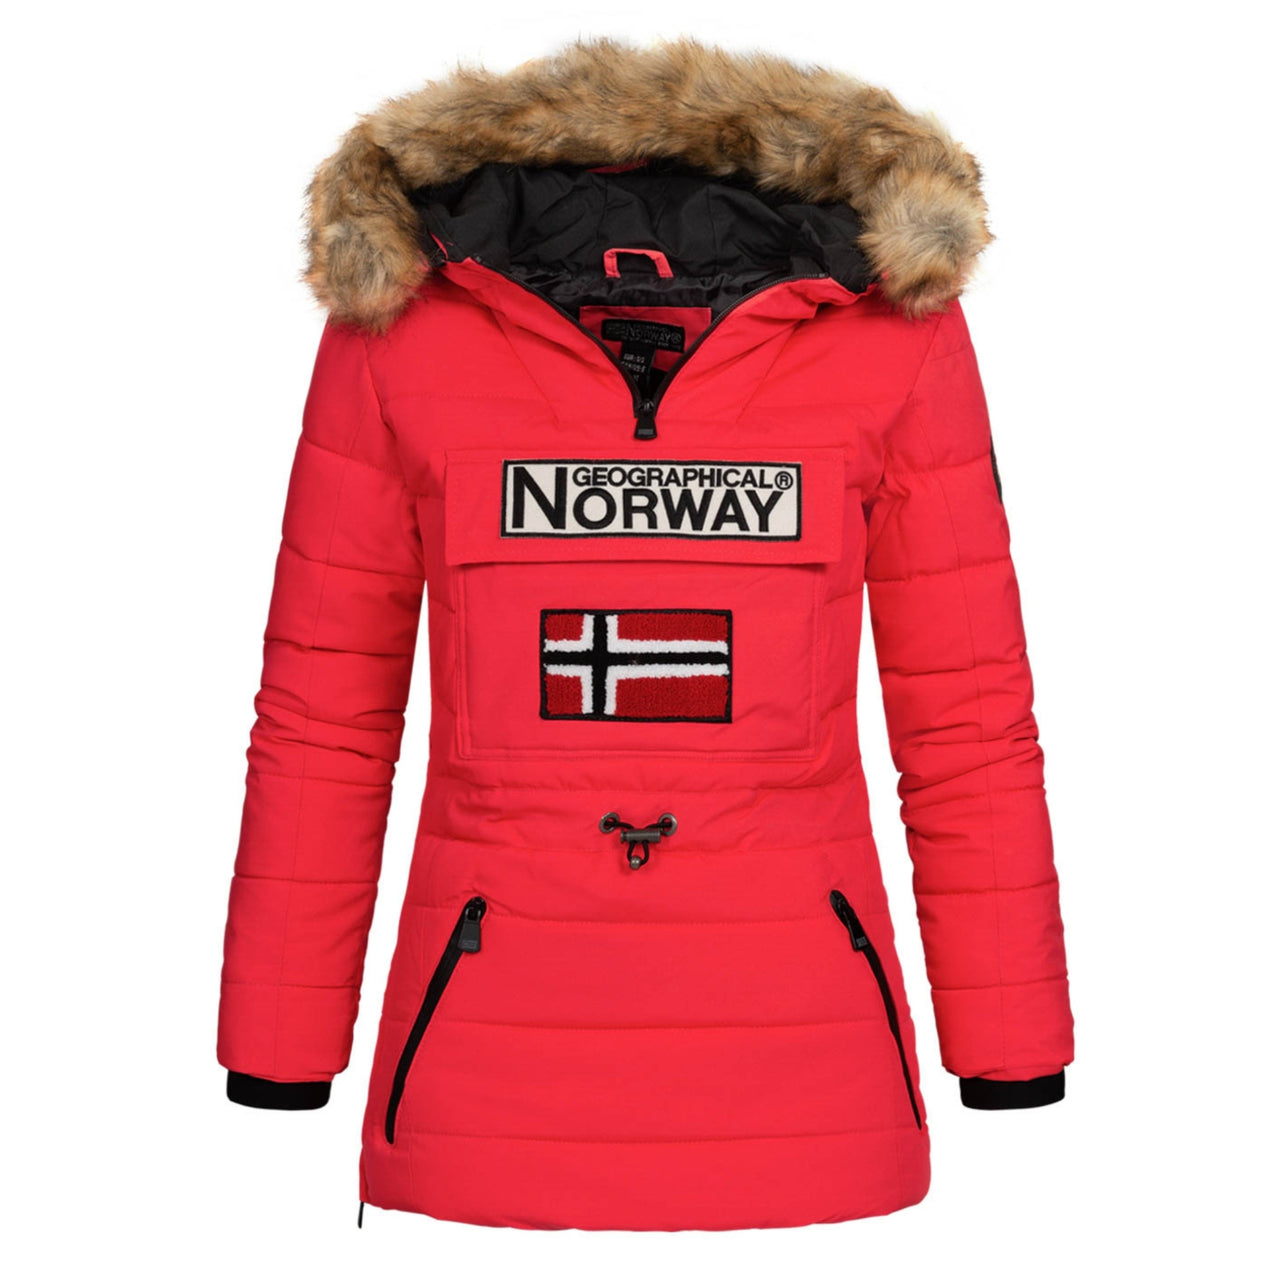 Geographical Norway Belinda, Mujer - Chaqueta de plumón acolchado